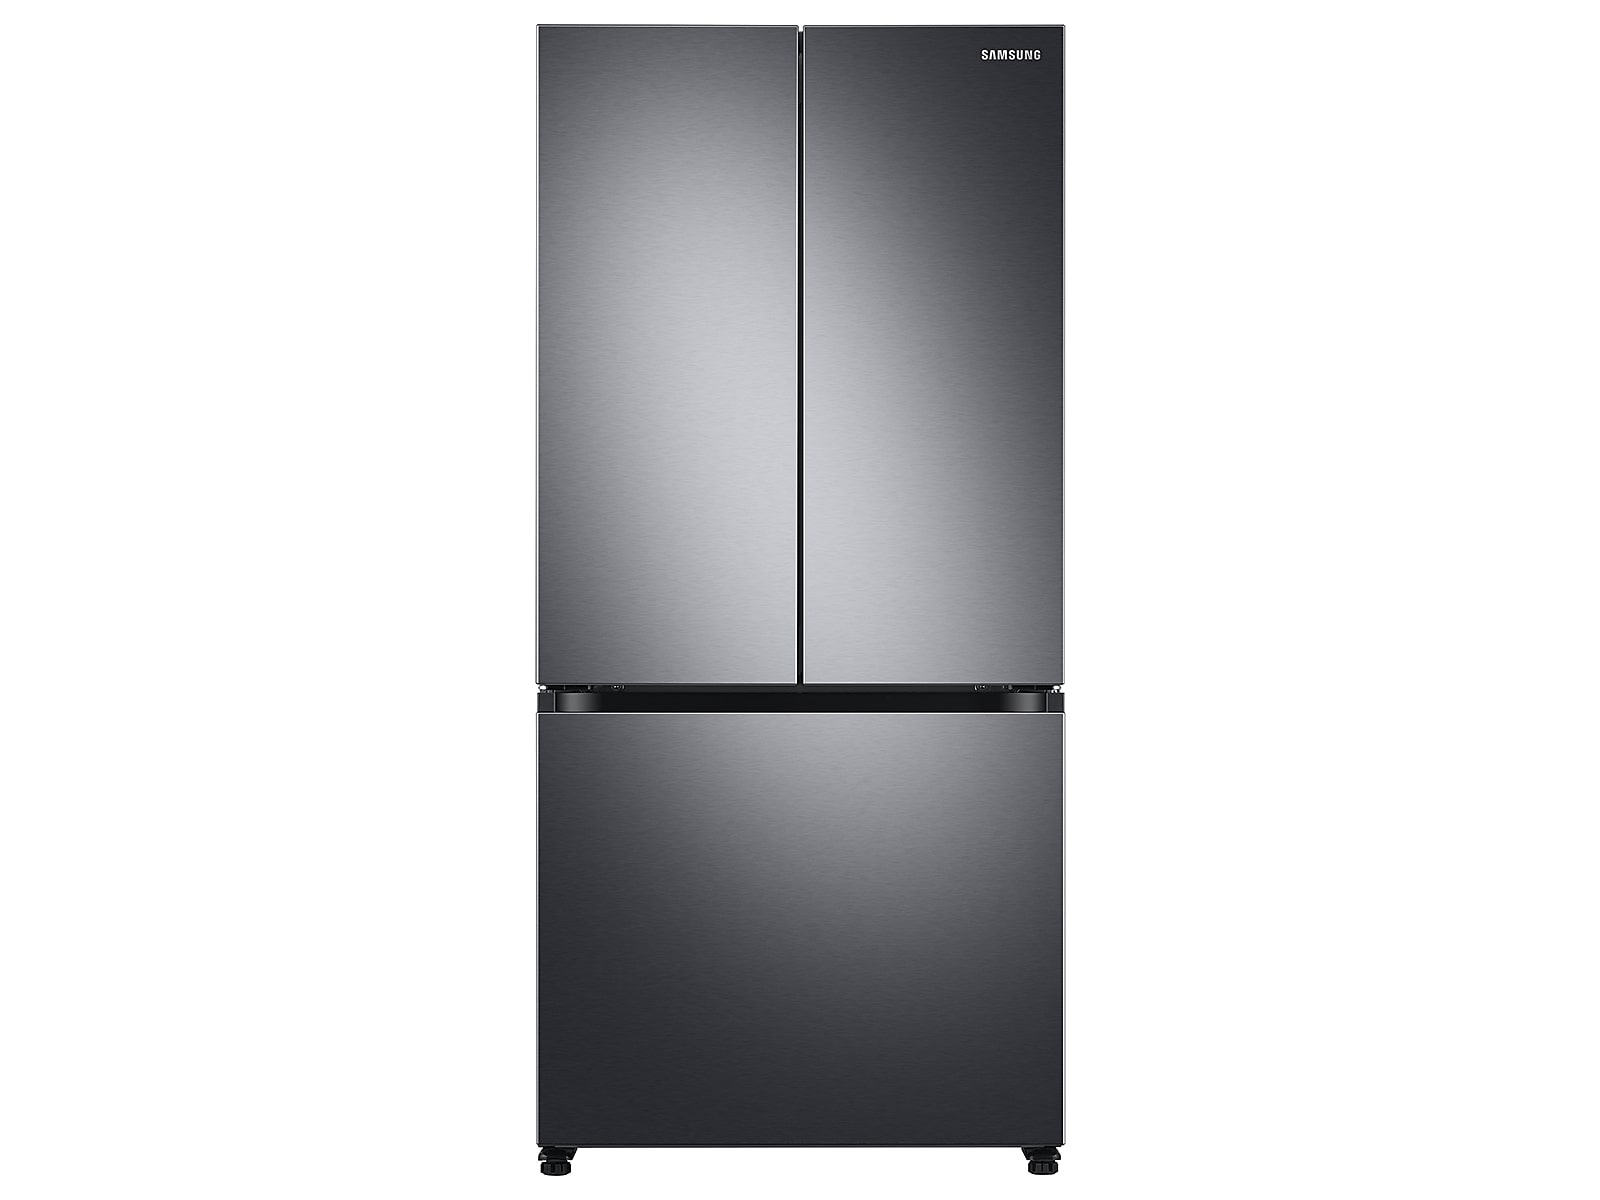 Samsung 18 cu. ft. Smart Counter Depth 3-Door French Door Refrigerator in Black Stainless Steel(RF18A5101SG/AA)